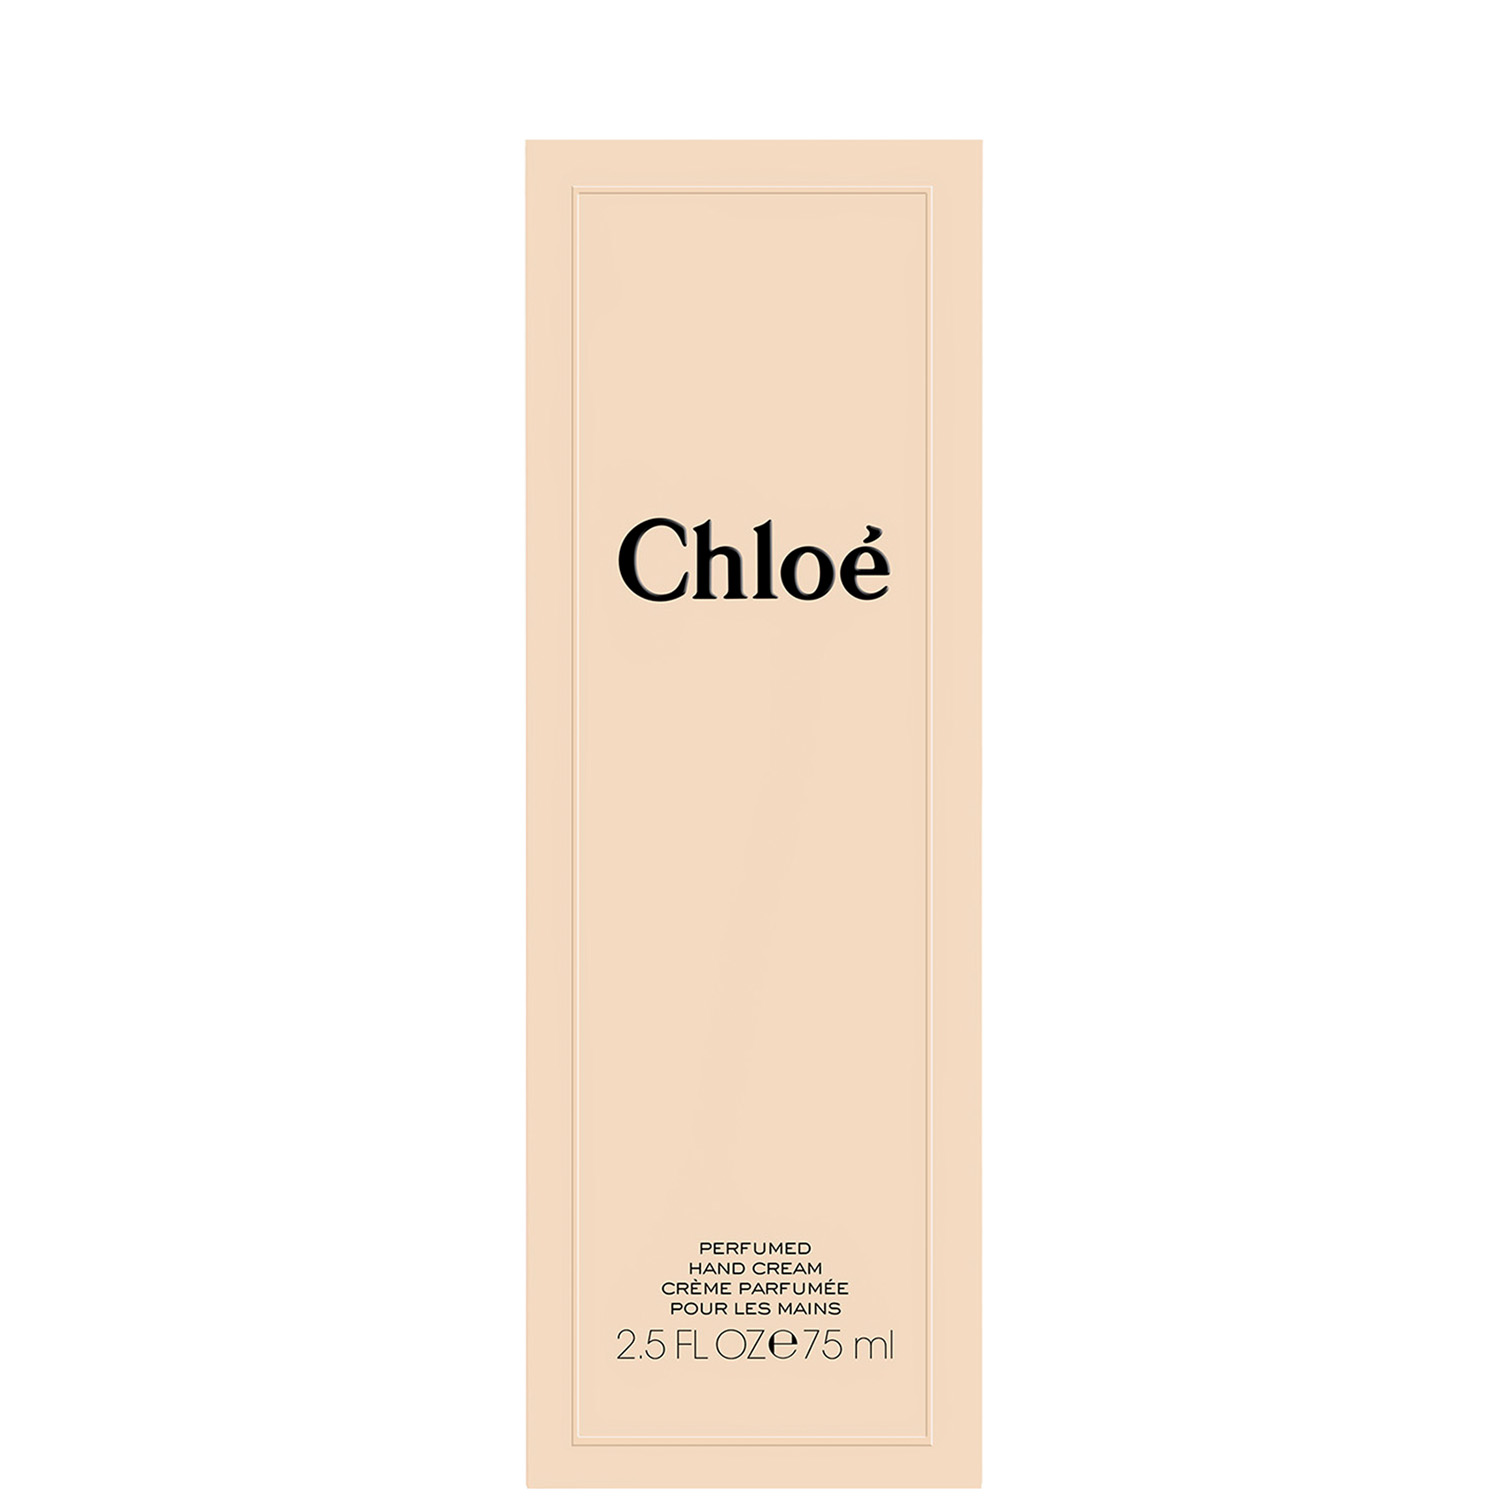 Chloé by Chloé Hand Cream 75ml